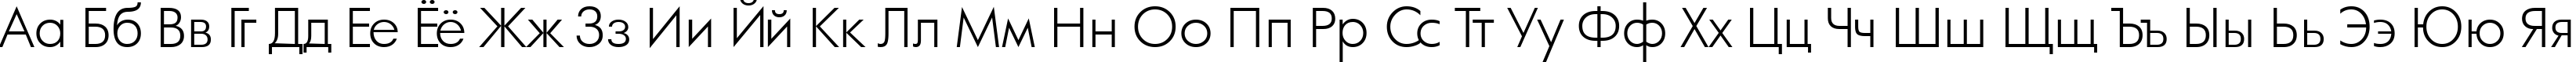 Пример написания русского алфавита шрифтом a_FuturaOrtoLt Light